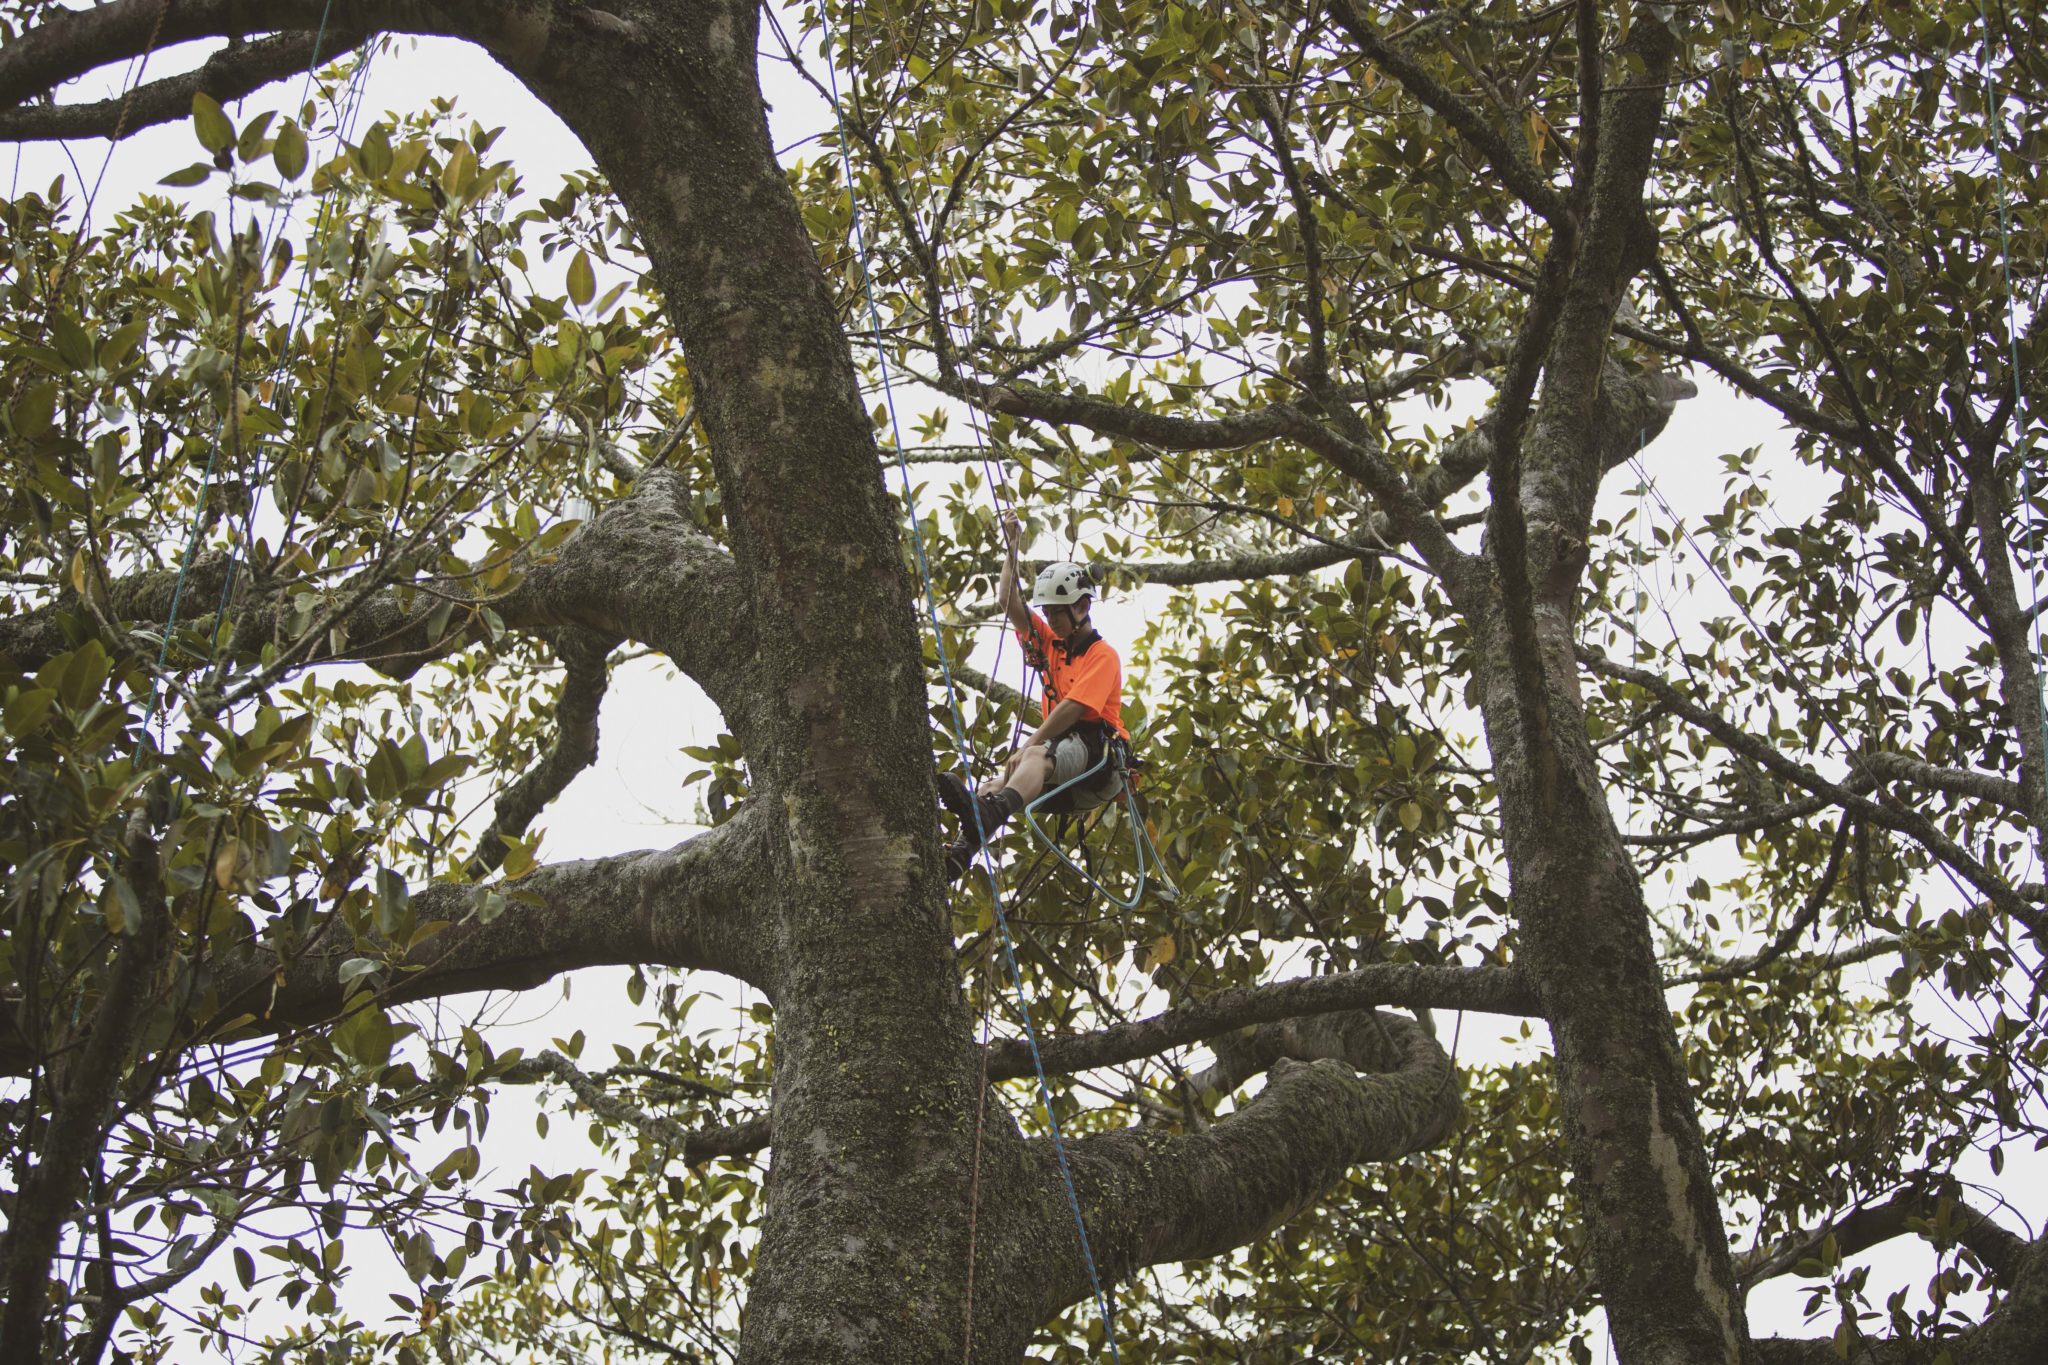 Tree climbing at Cornwall Park